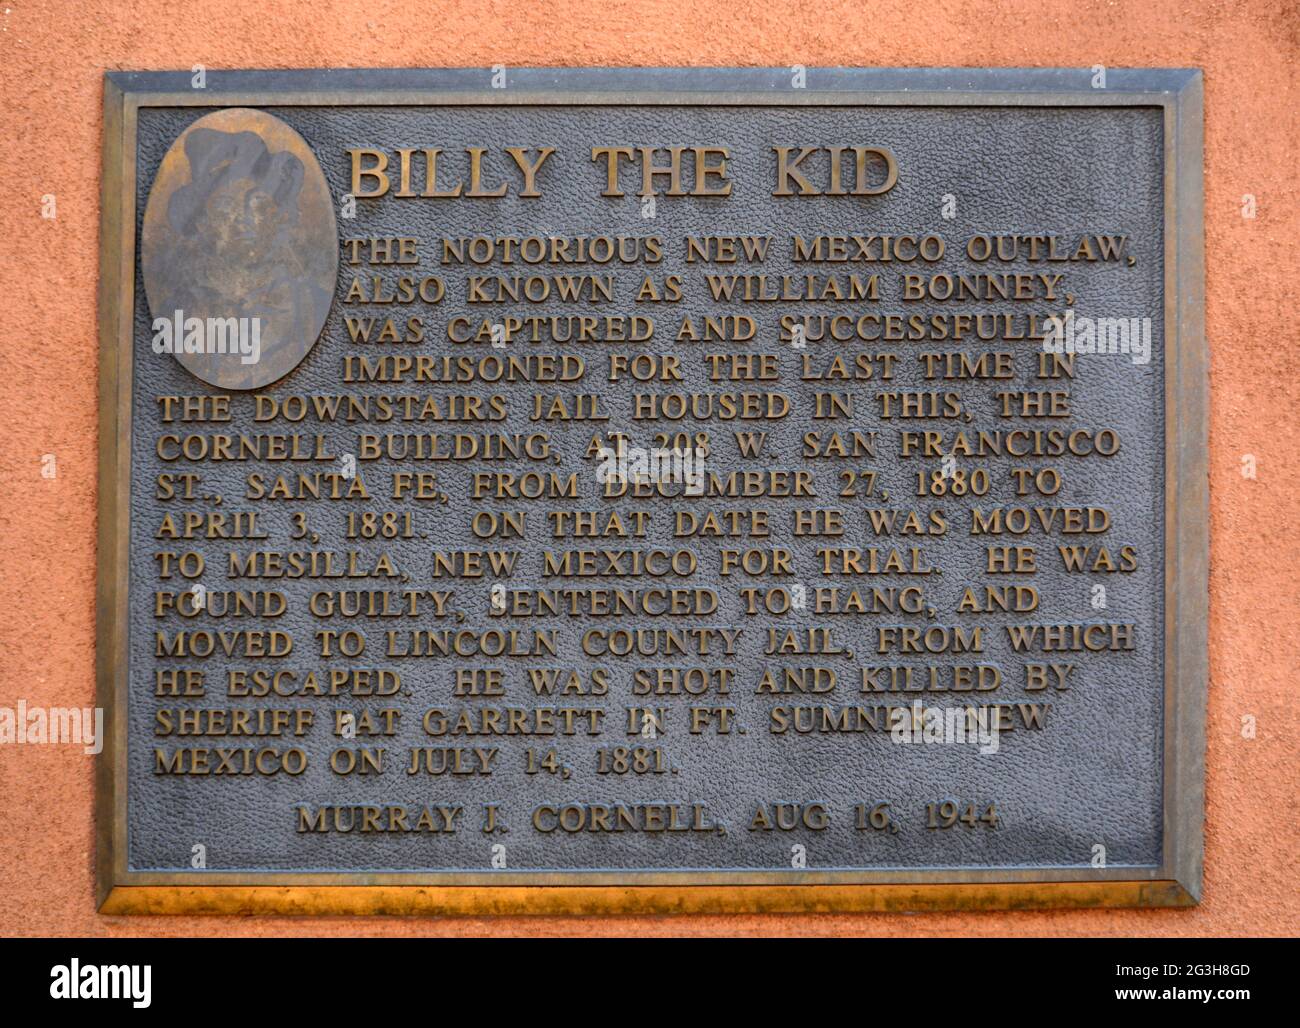 Una placca di metallo a Santa Fe, New Mexico, segna il luogo di una prigione del 1800 che un tempo teneva il famigerato fuorilegge americano William Bonney, o Billy the Kid. Foto Stock